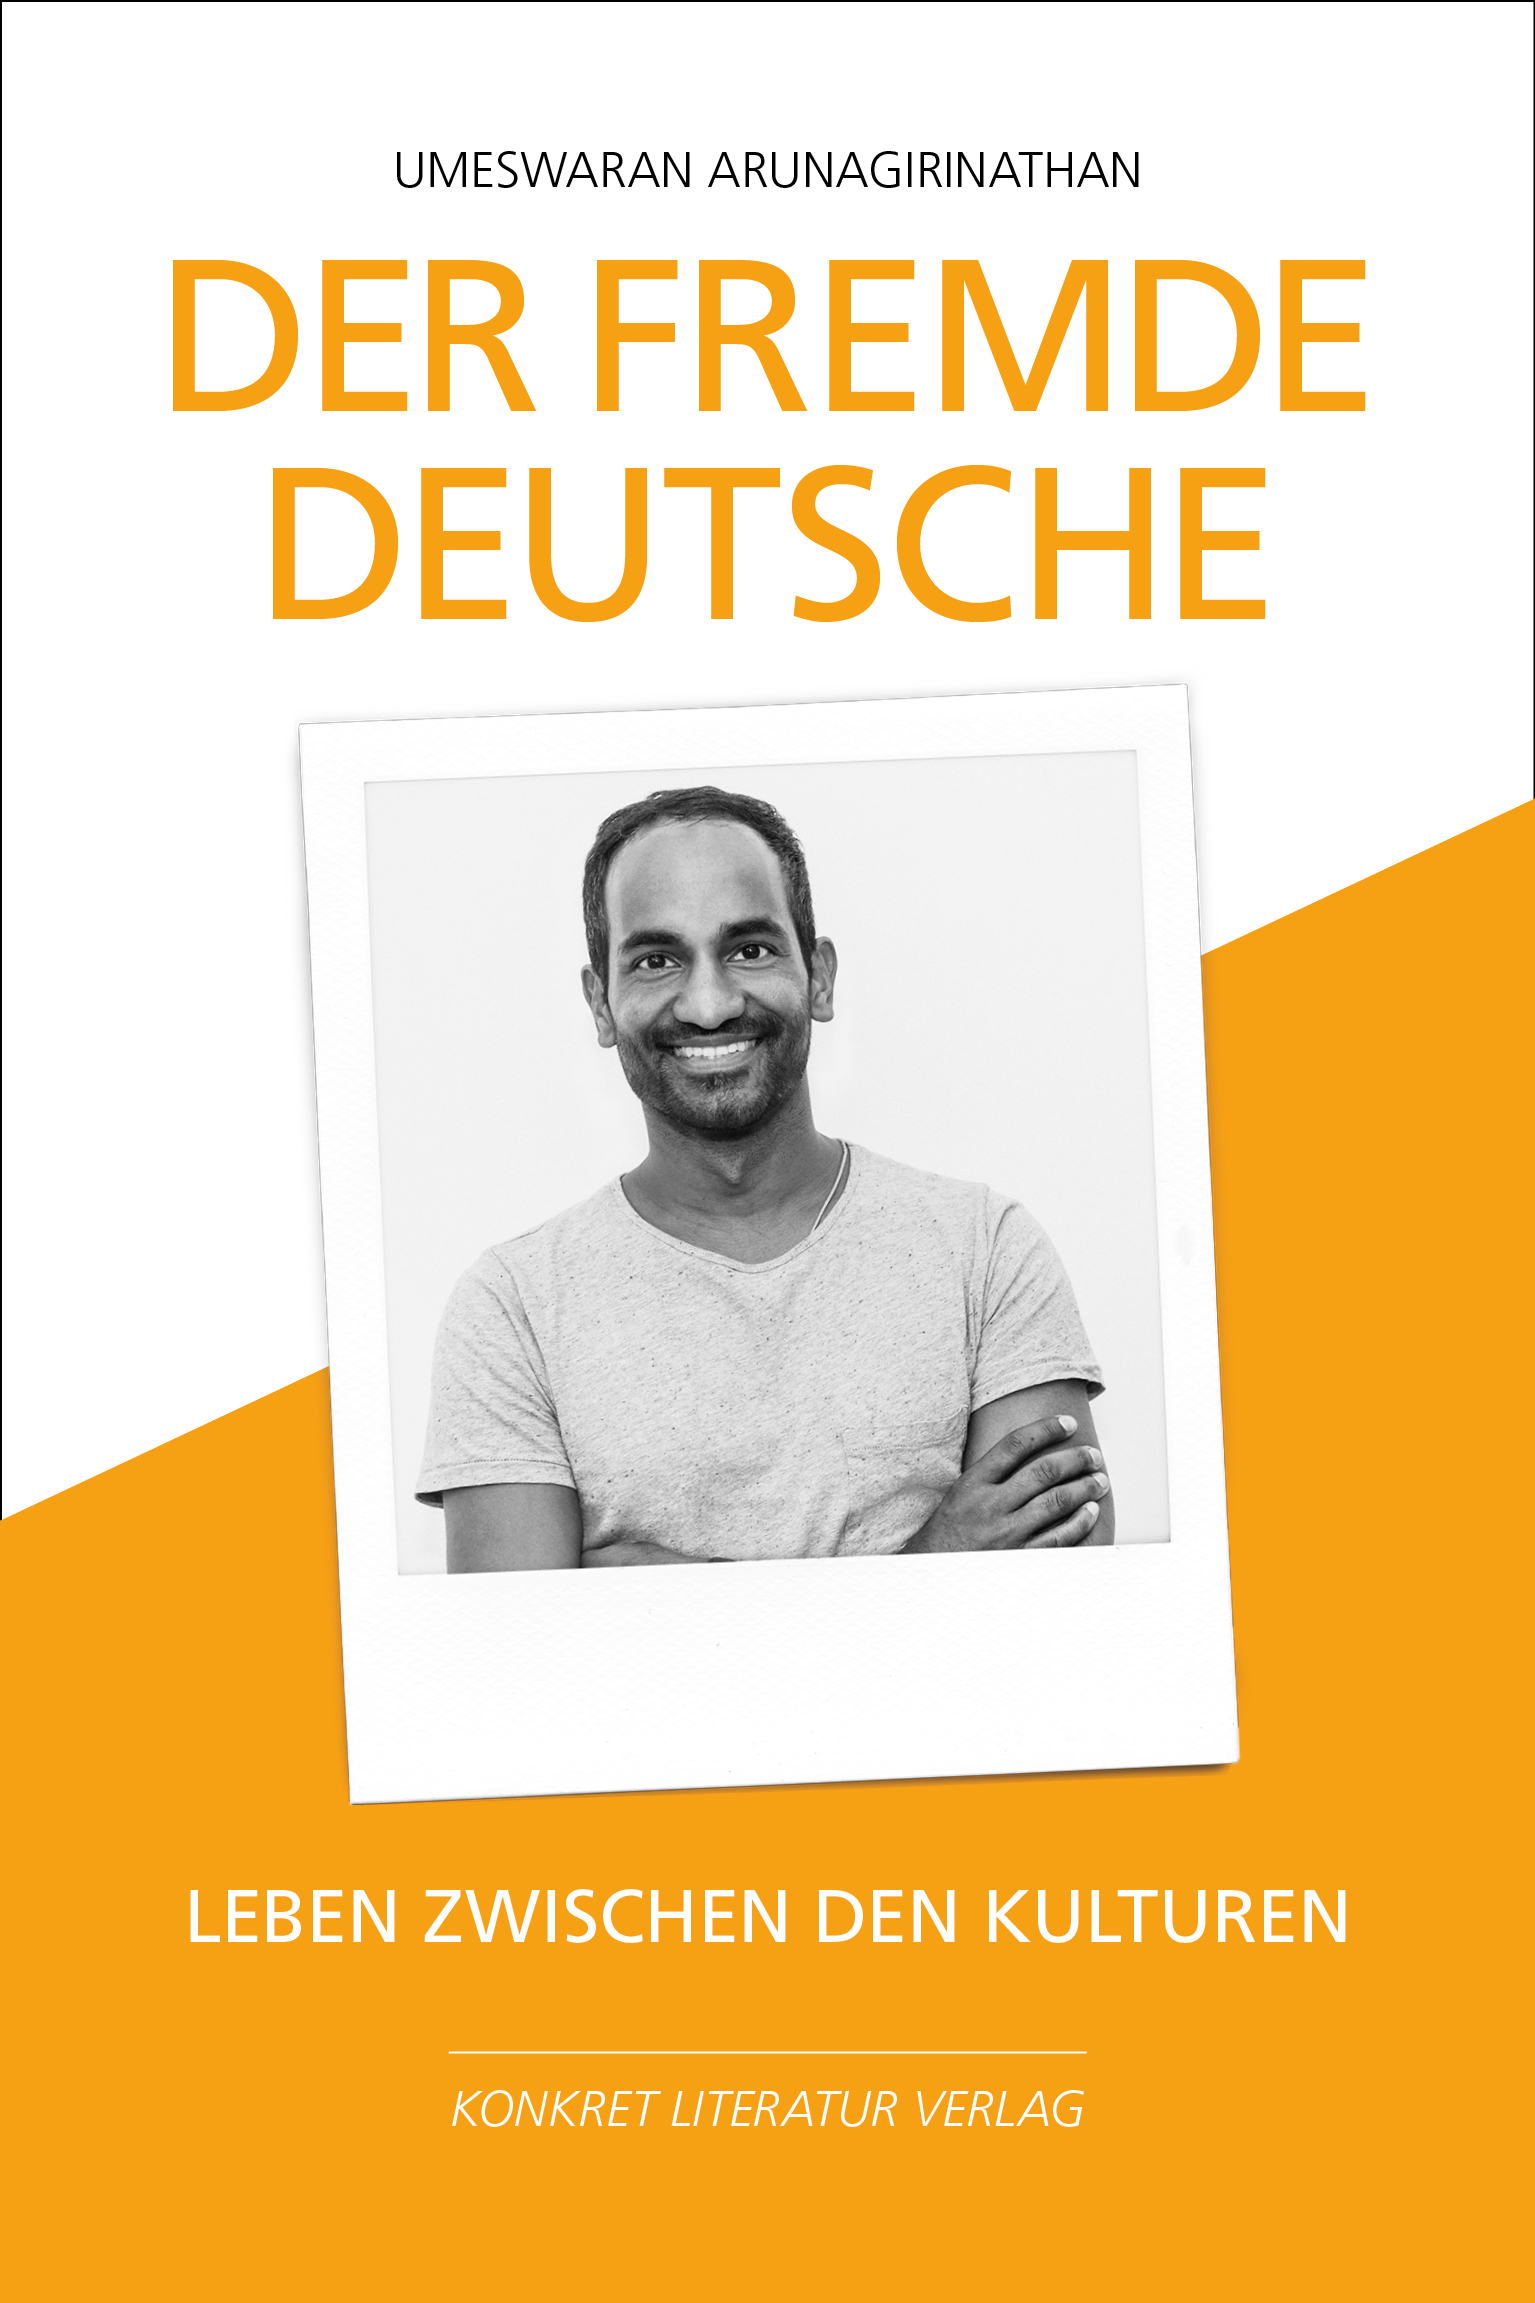 Cover des Buches "Der fremde Deutsche"